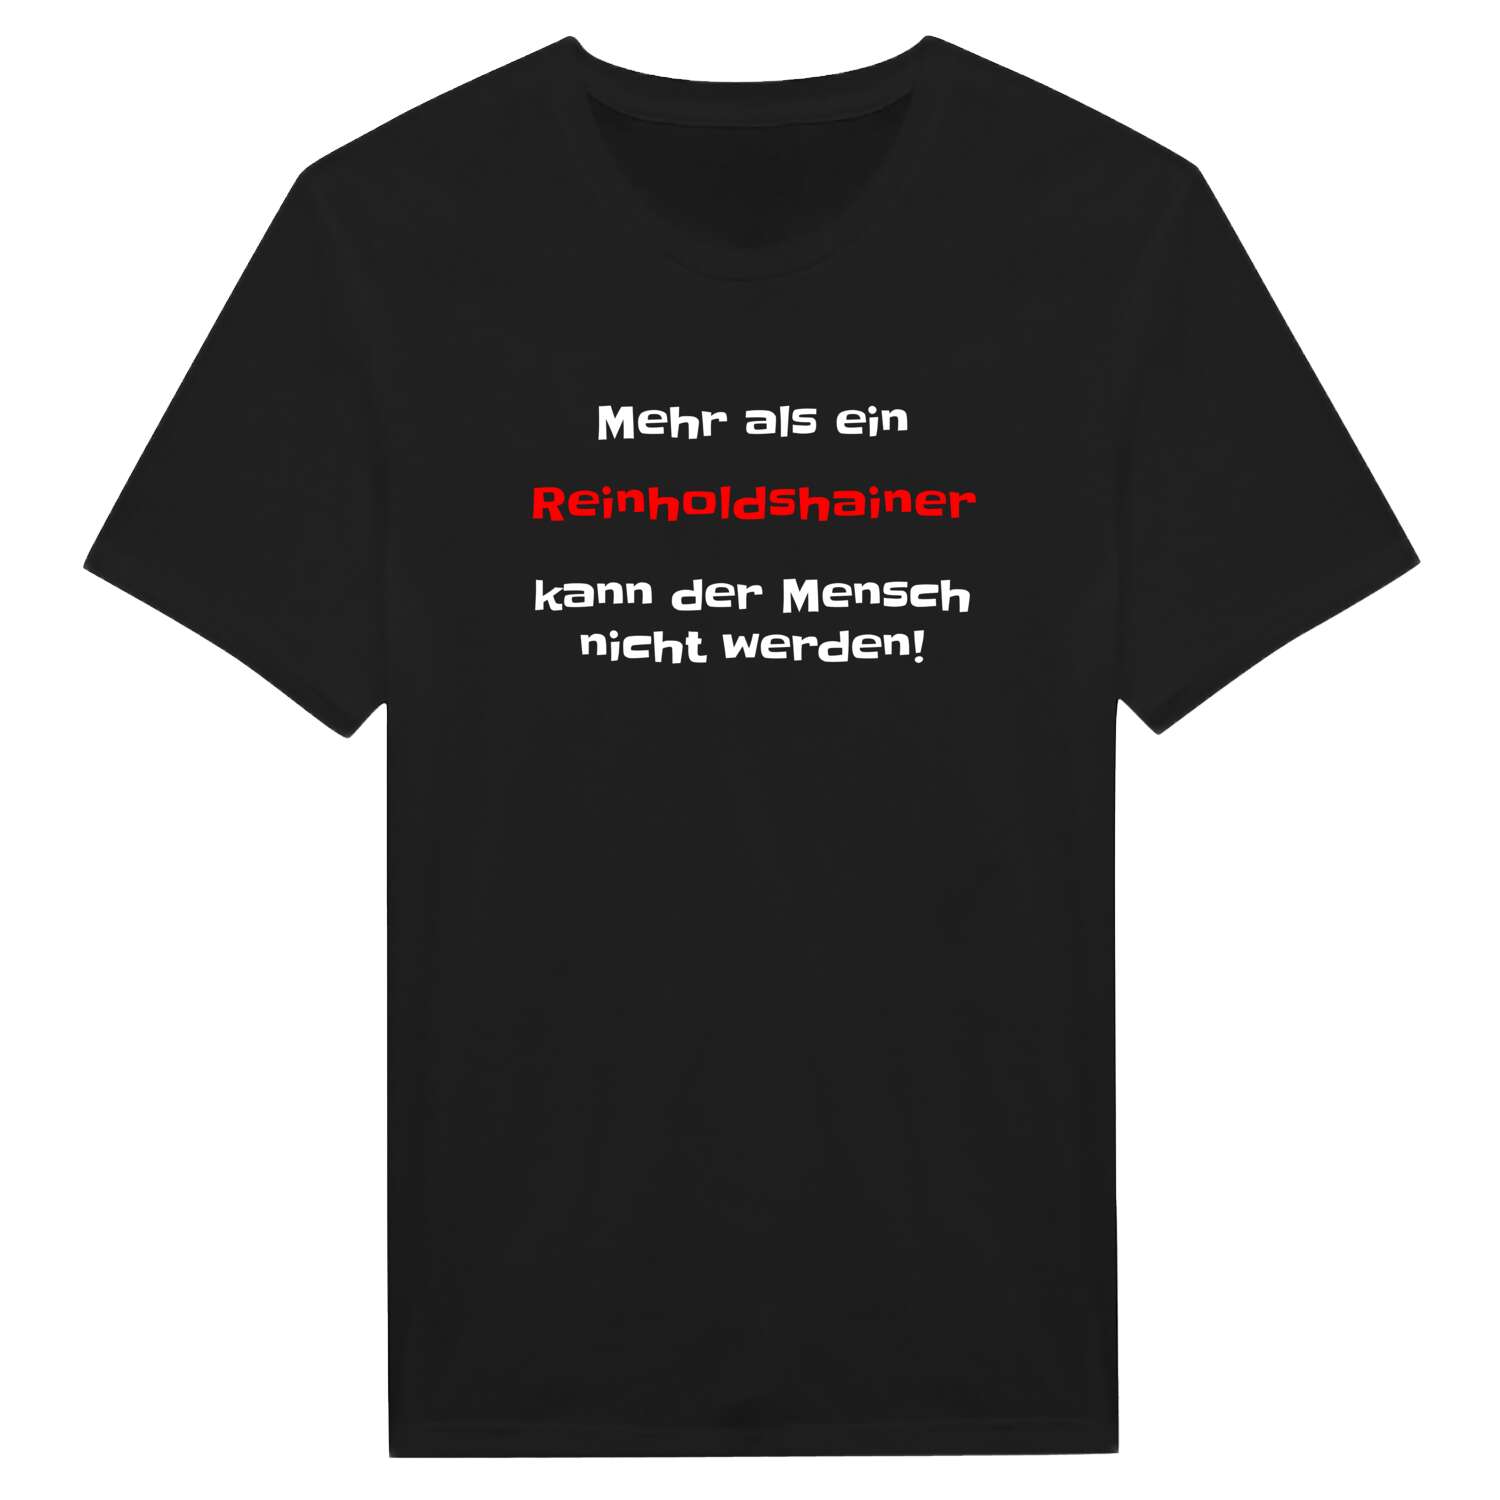 Reinholdshain T-Shirt »Mehr als ein«